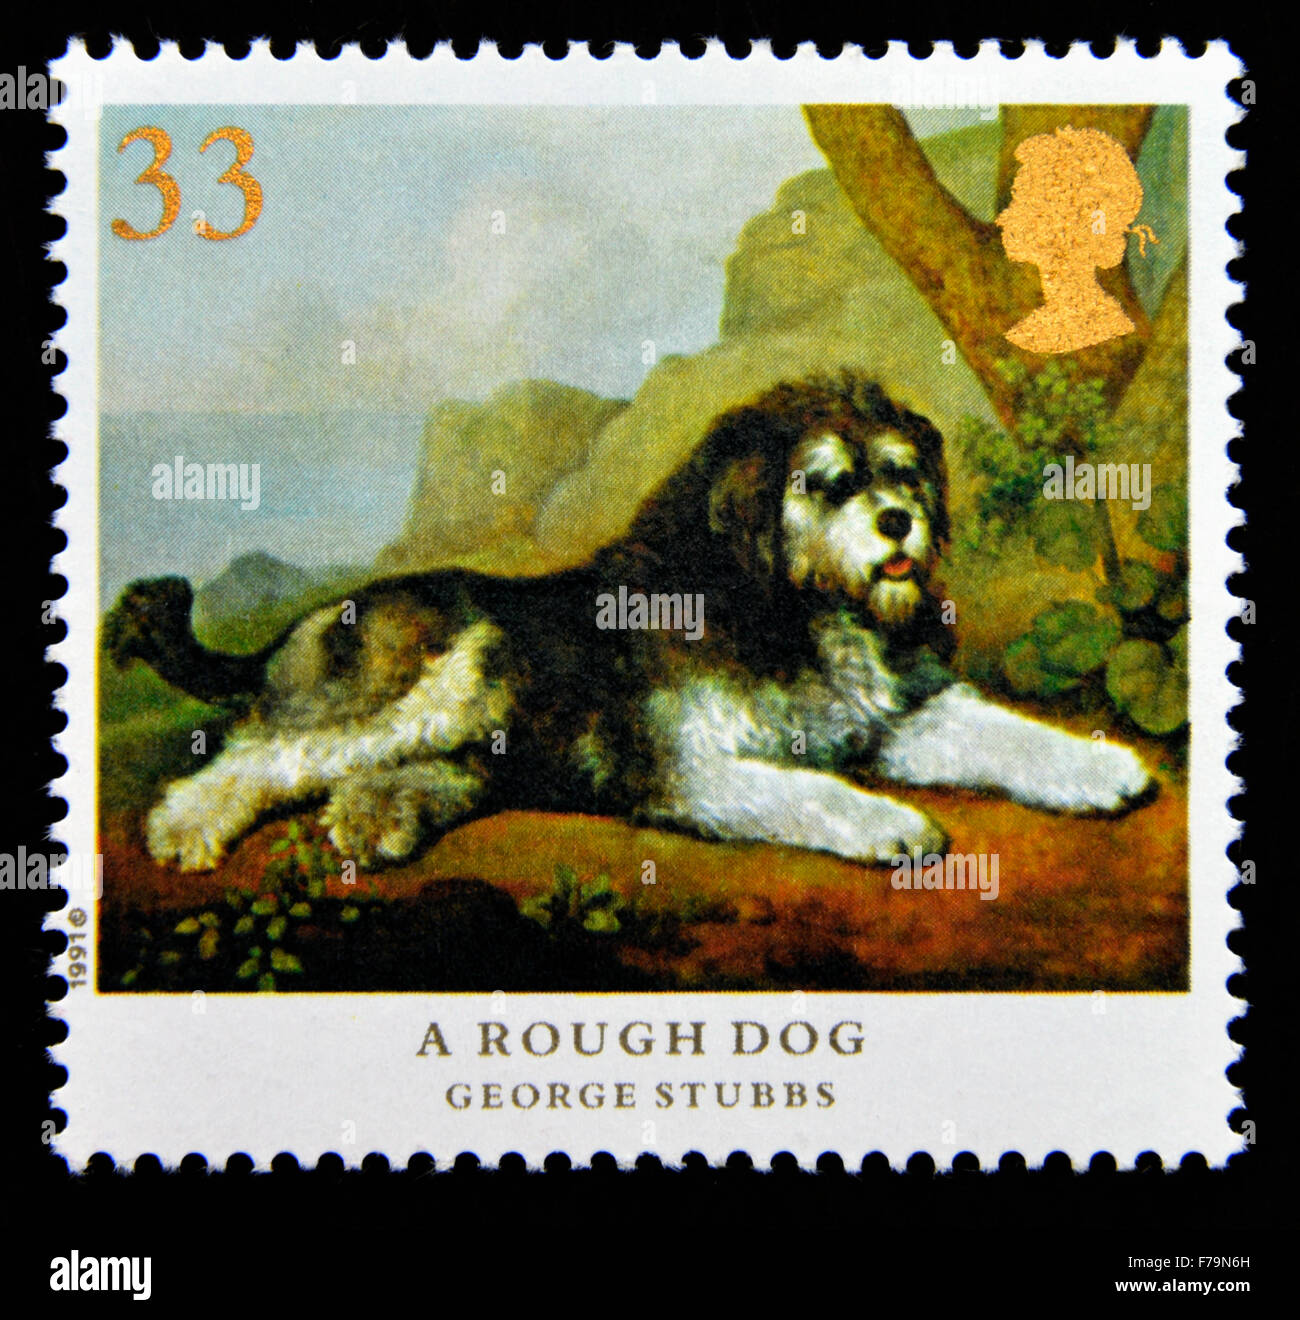 Timbre-poste. La Grande-Bretagne. La reine Elizabeth II. 1991. Les chiens. Peintures de George Stubbs. Un chien. 33p. Banque D'Images